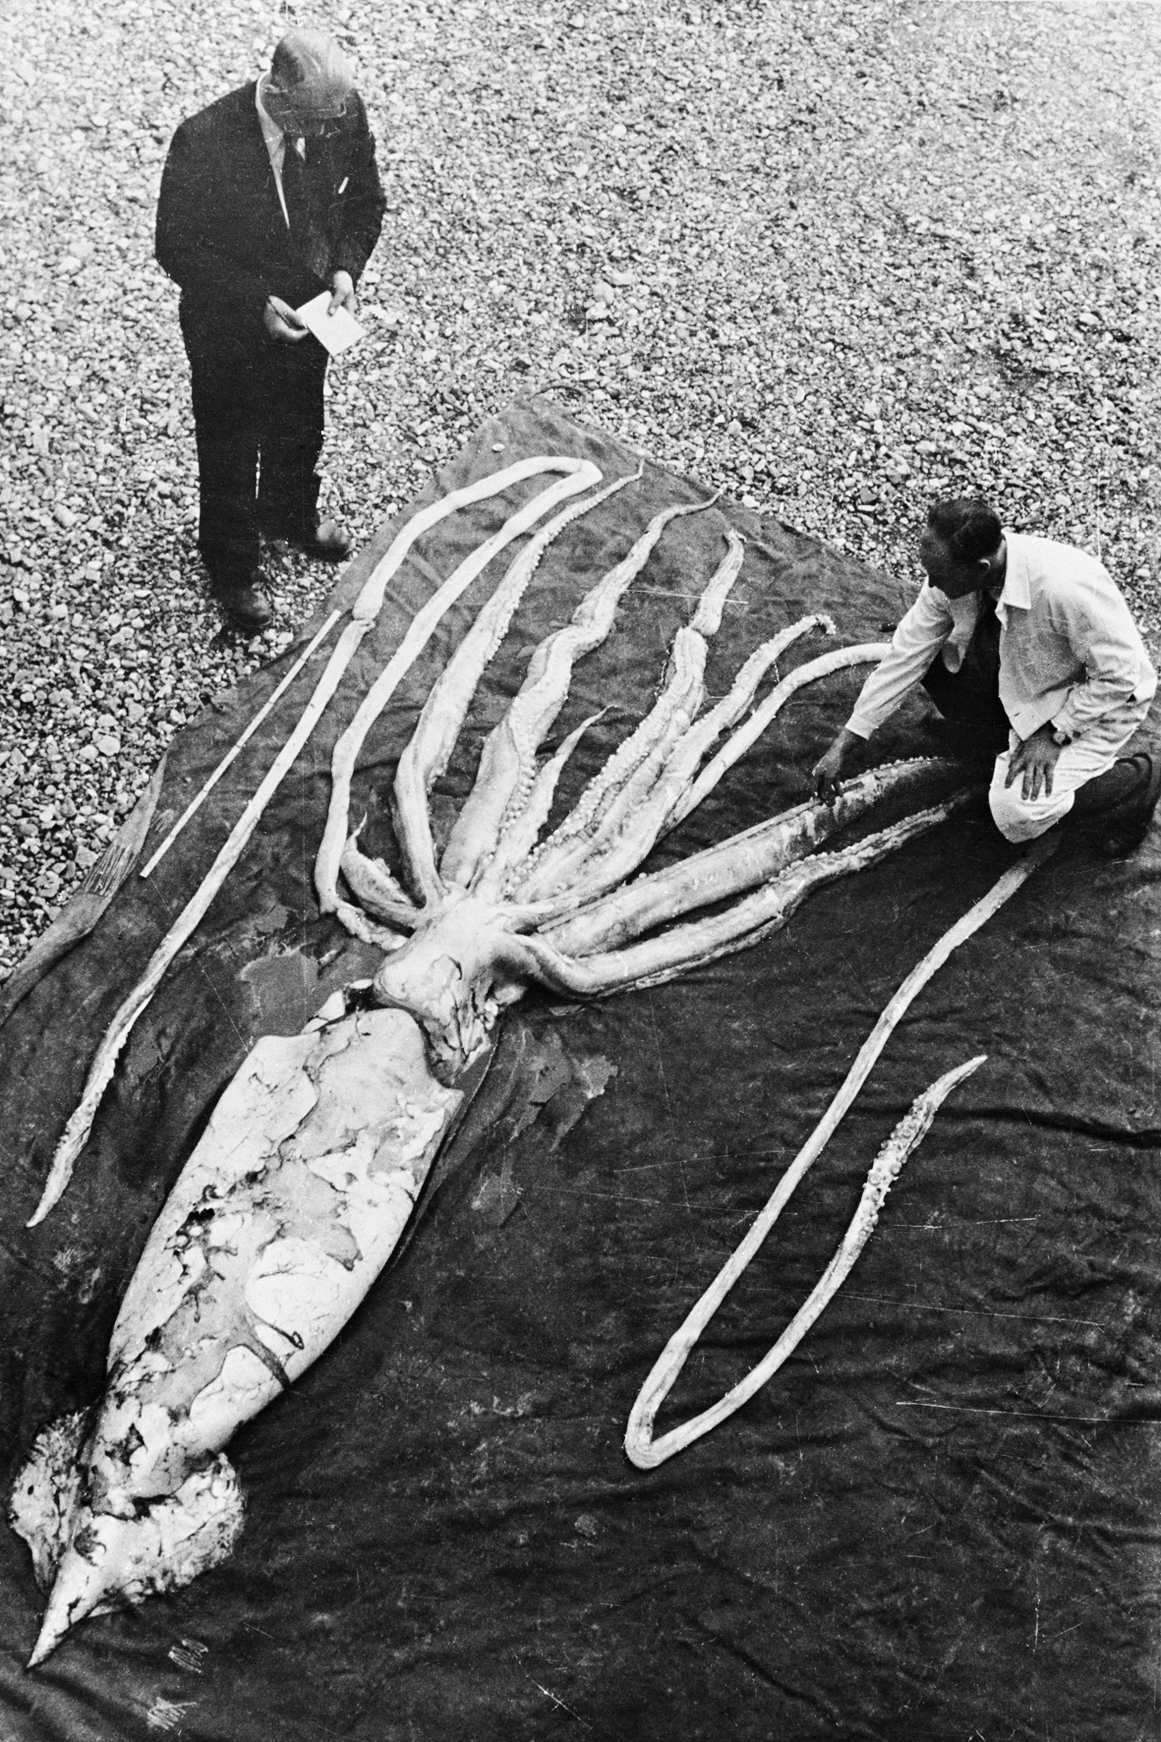 Obří chobotnice nalezená v Ranheimu v Trondheimu 2. října 1954 je měřena profesory Erlingem Sivertsenem a Sveinem Haftornem. Exemplář (druhý největší hlavonožec) byl naměřen na celkovou délku 9.2 metru. NTNU Museum of Natural History and Archeaology / Wikimedia Commons